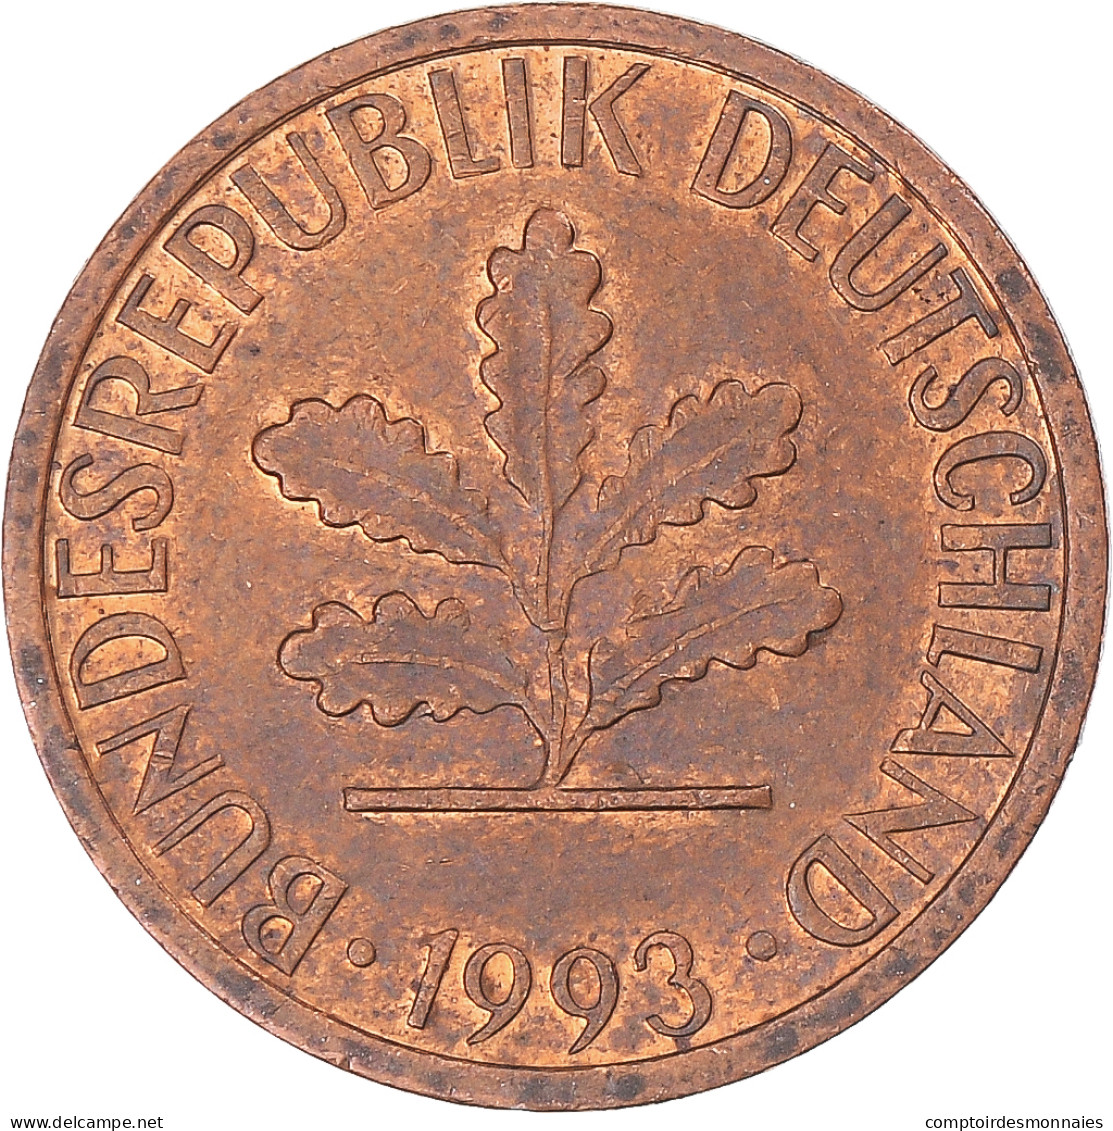 Monnaie, Allemagne, Pfennig, 1993 - 1 Pfennig